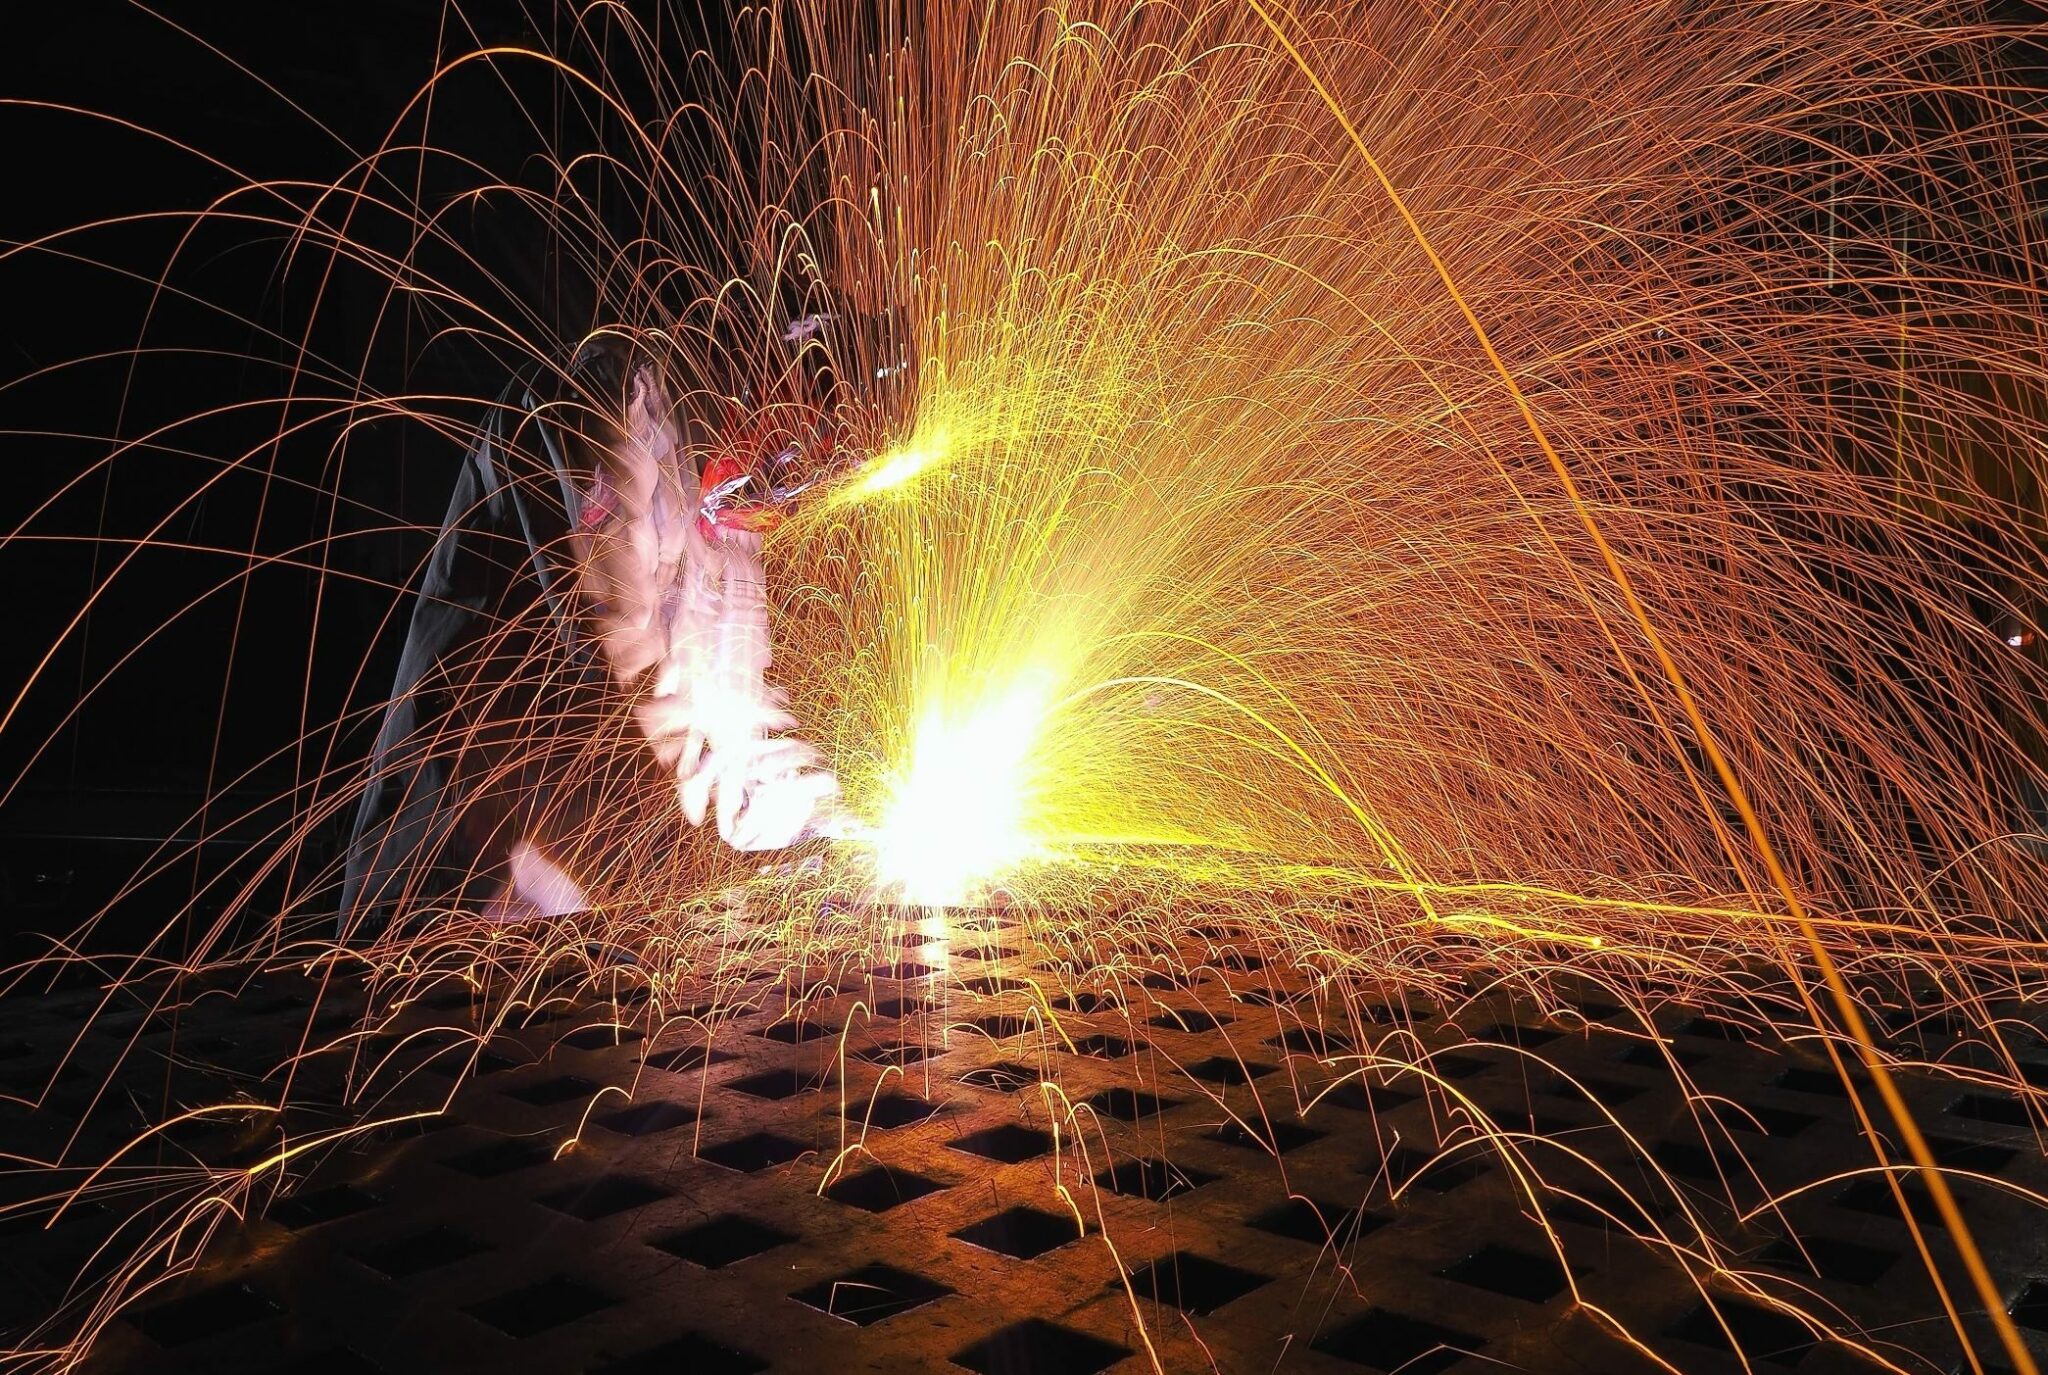 image d'illustration : photo d'étincelles produites par le travail du fer